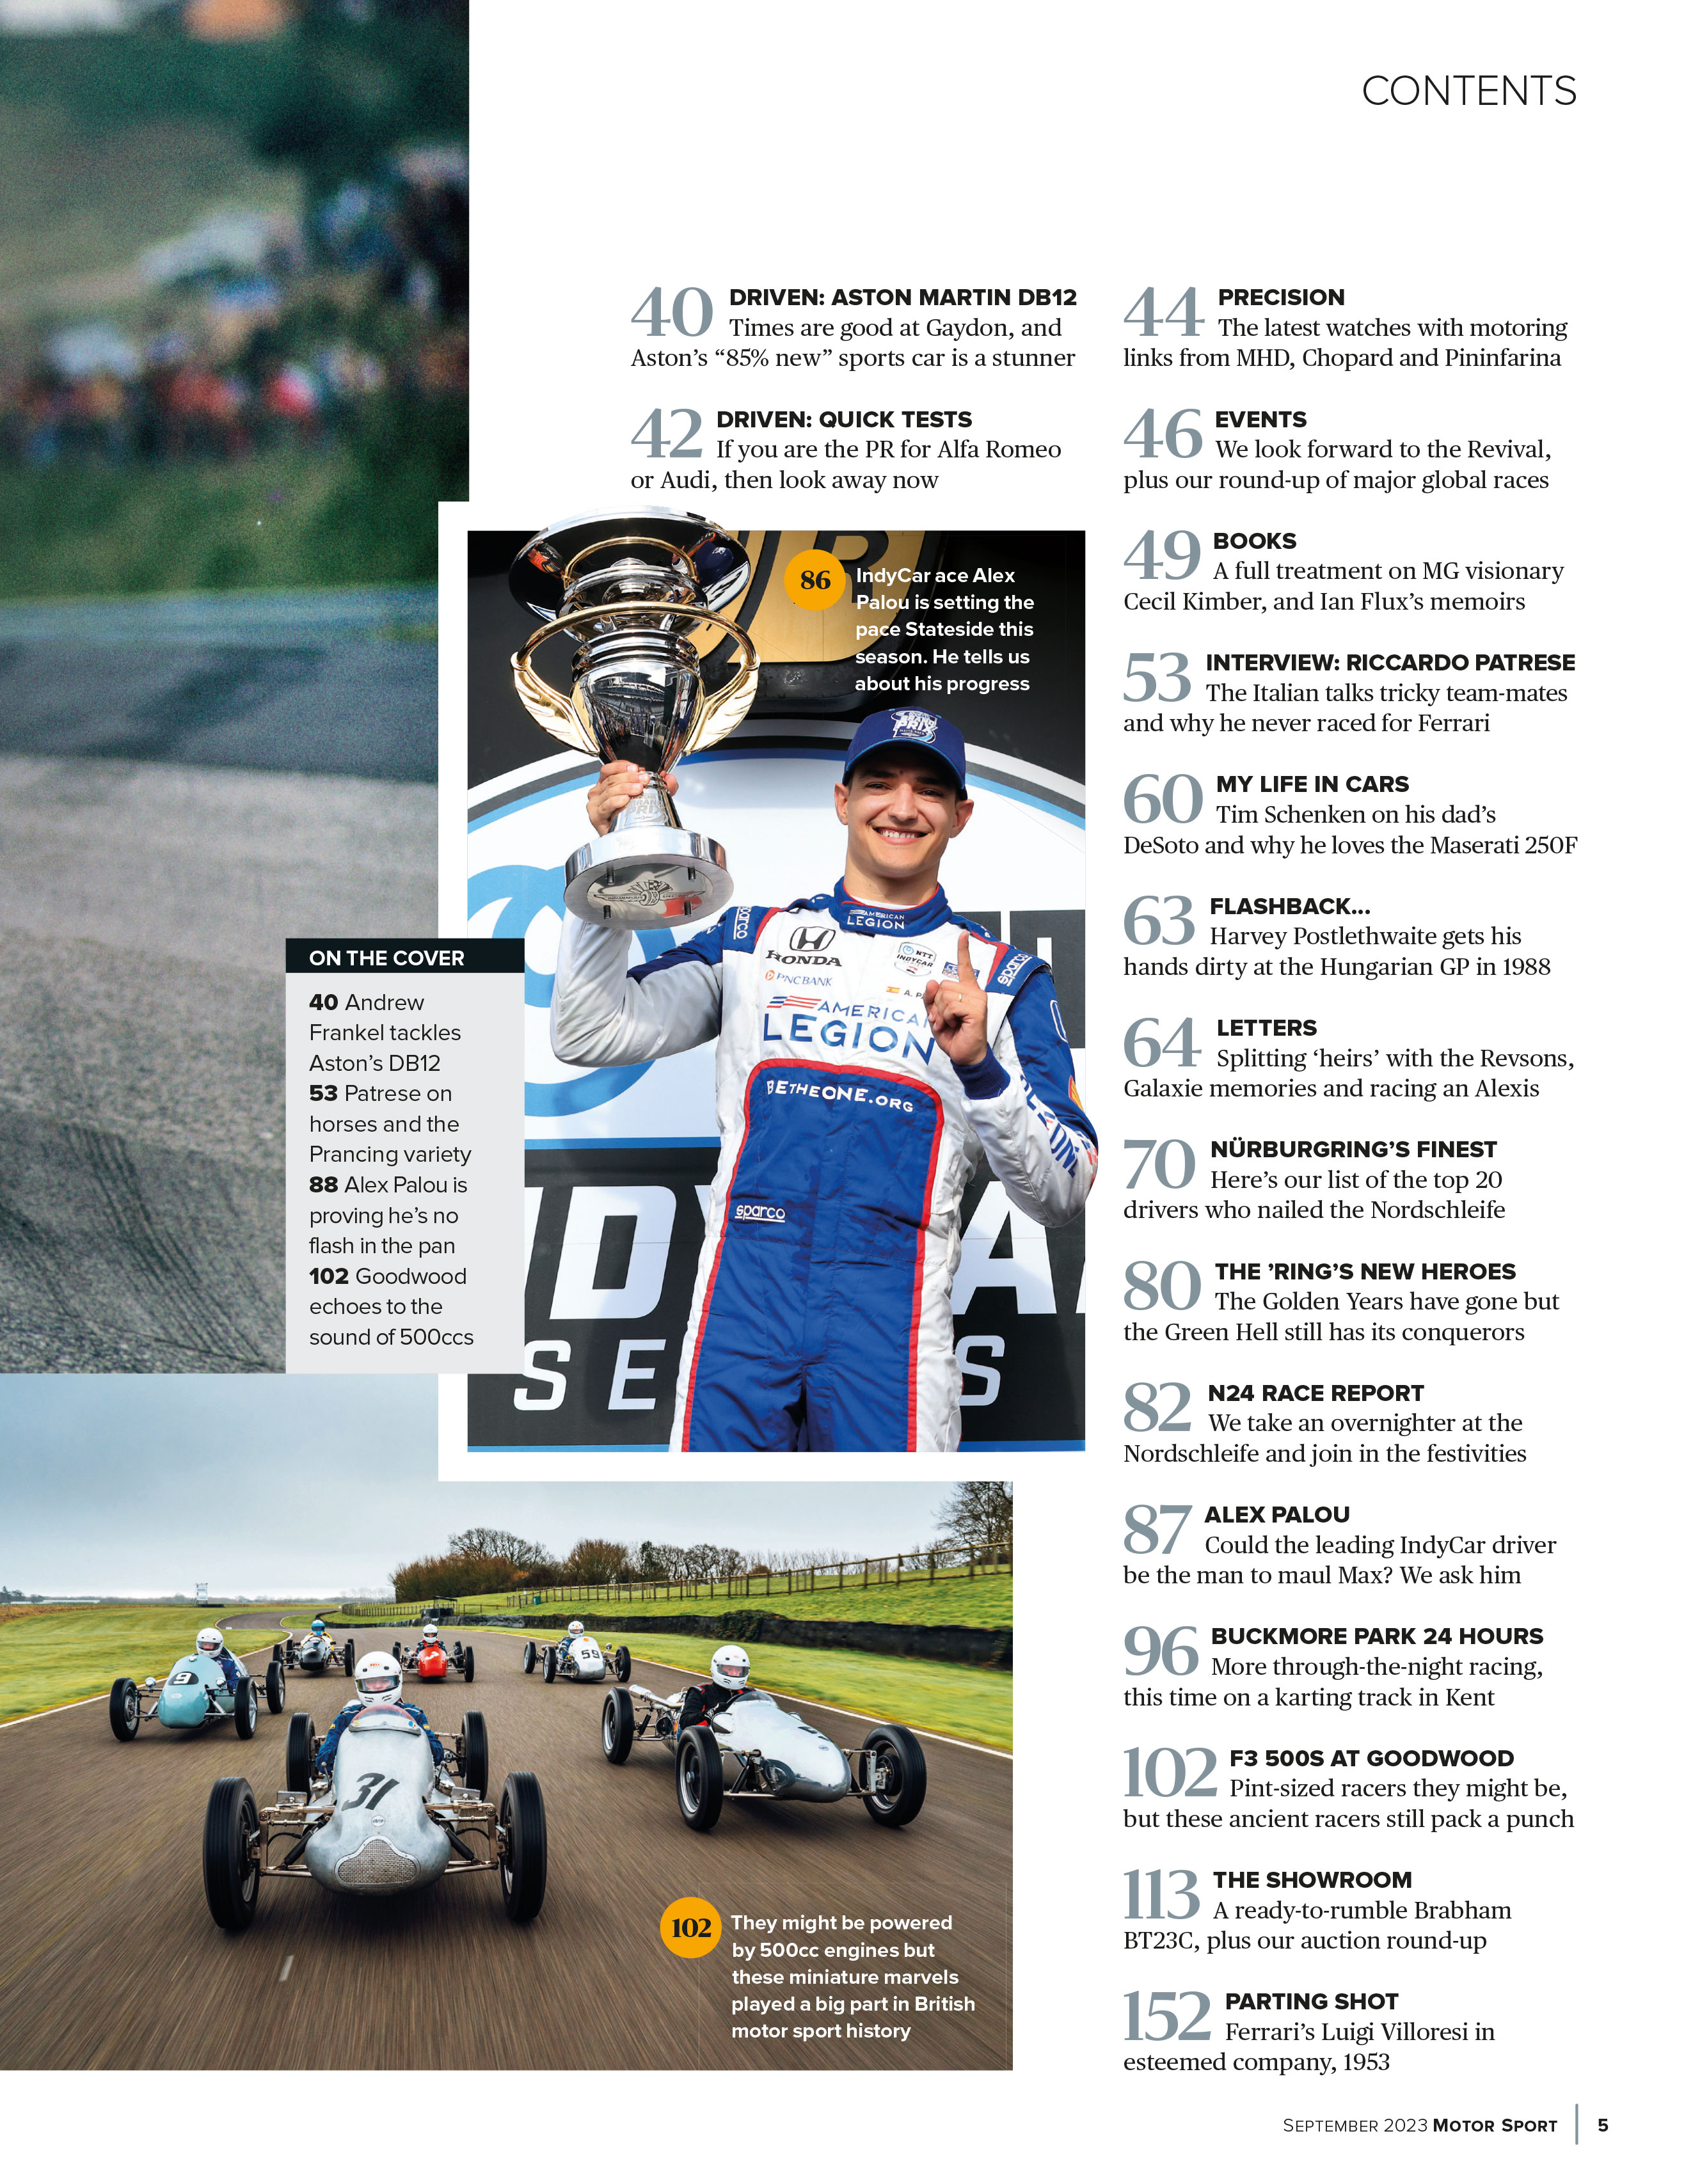 MM Artigos Imperdíveis - 1.126 tombos! - de Mat Oxley para Motor Sport  Magazine, Blog Mundo Moto